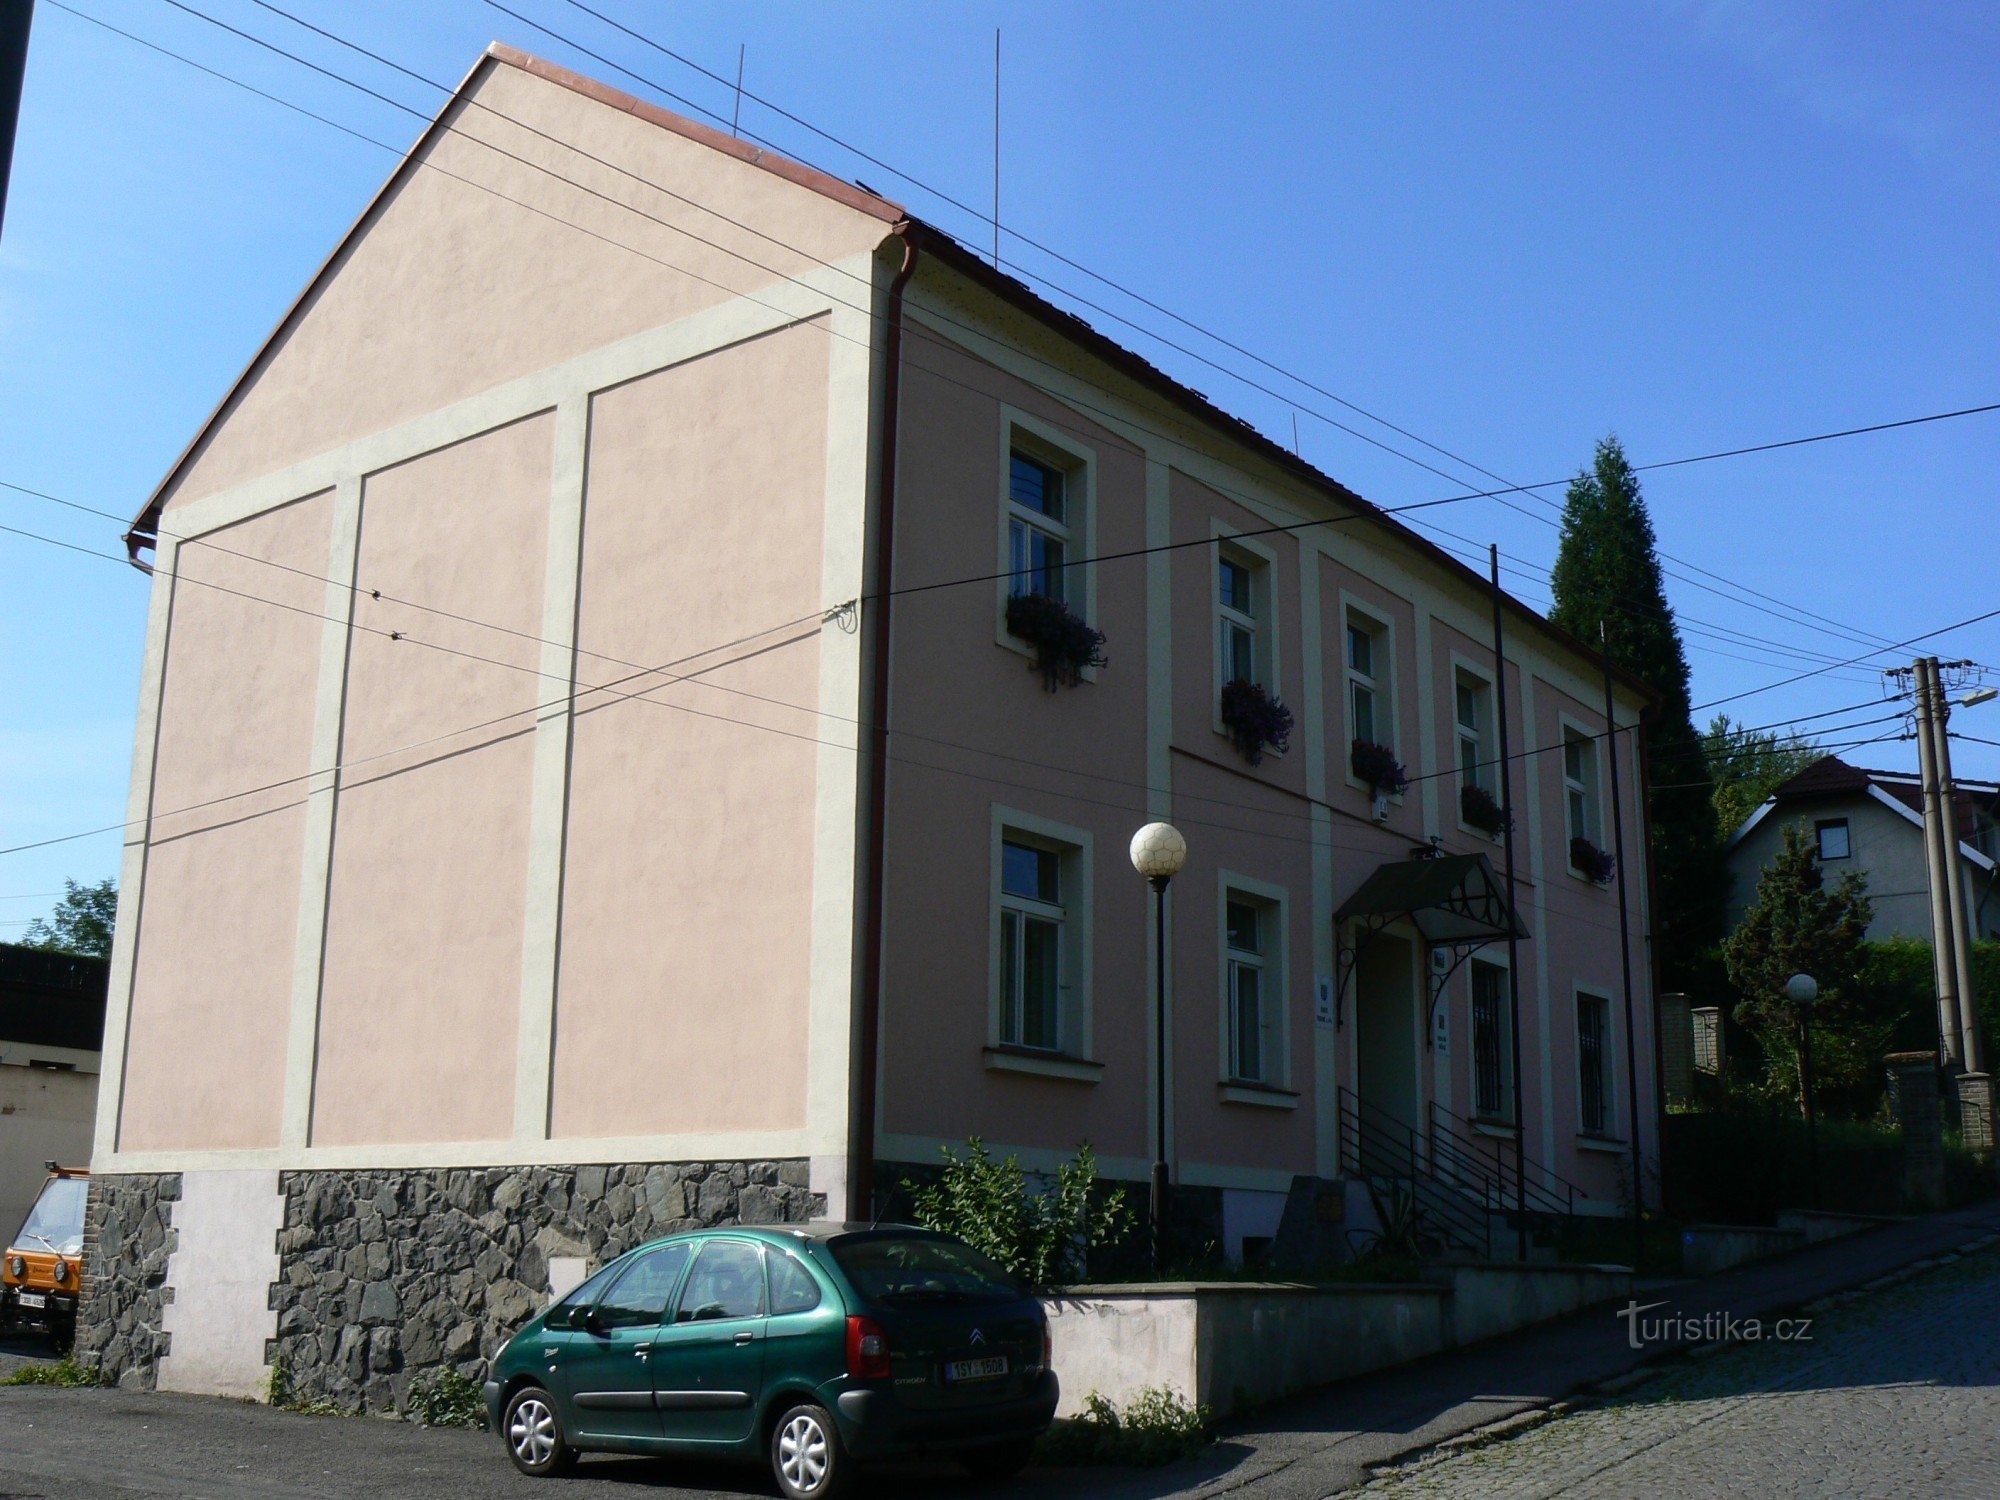 Văn phòng thành phố Vrané n / V, Březovská 112